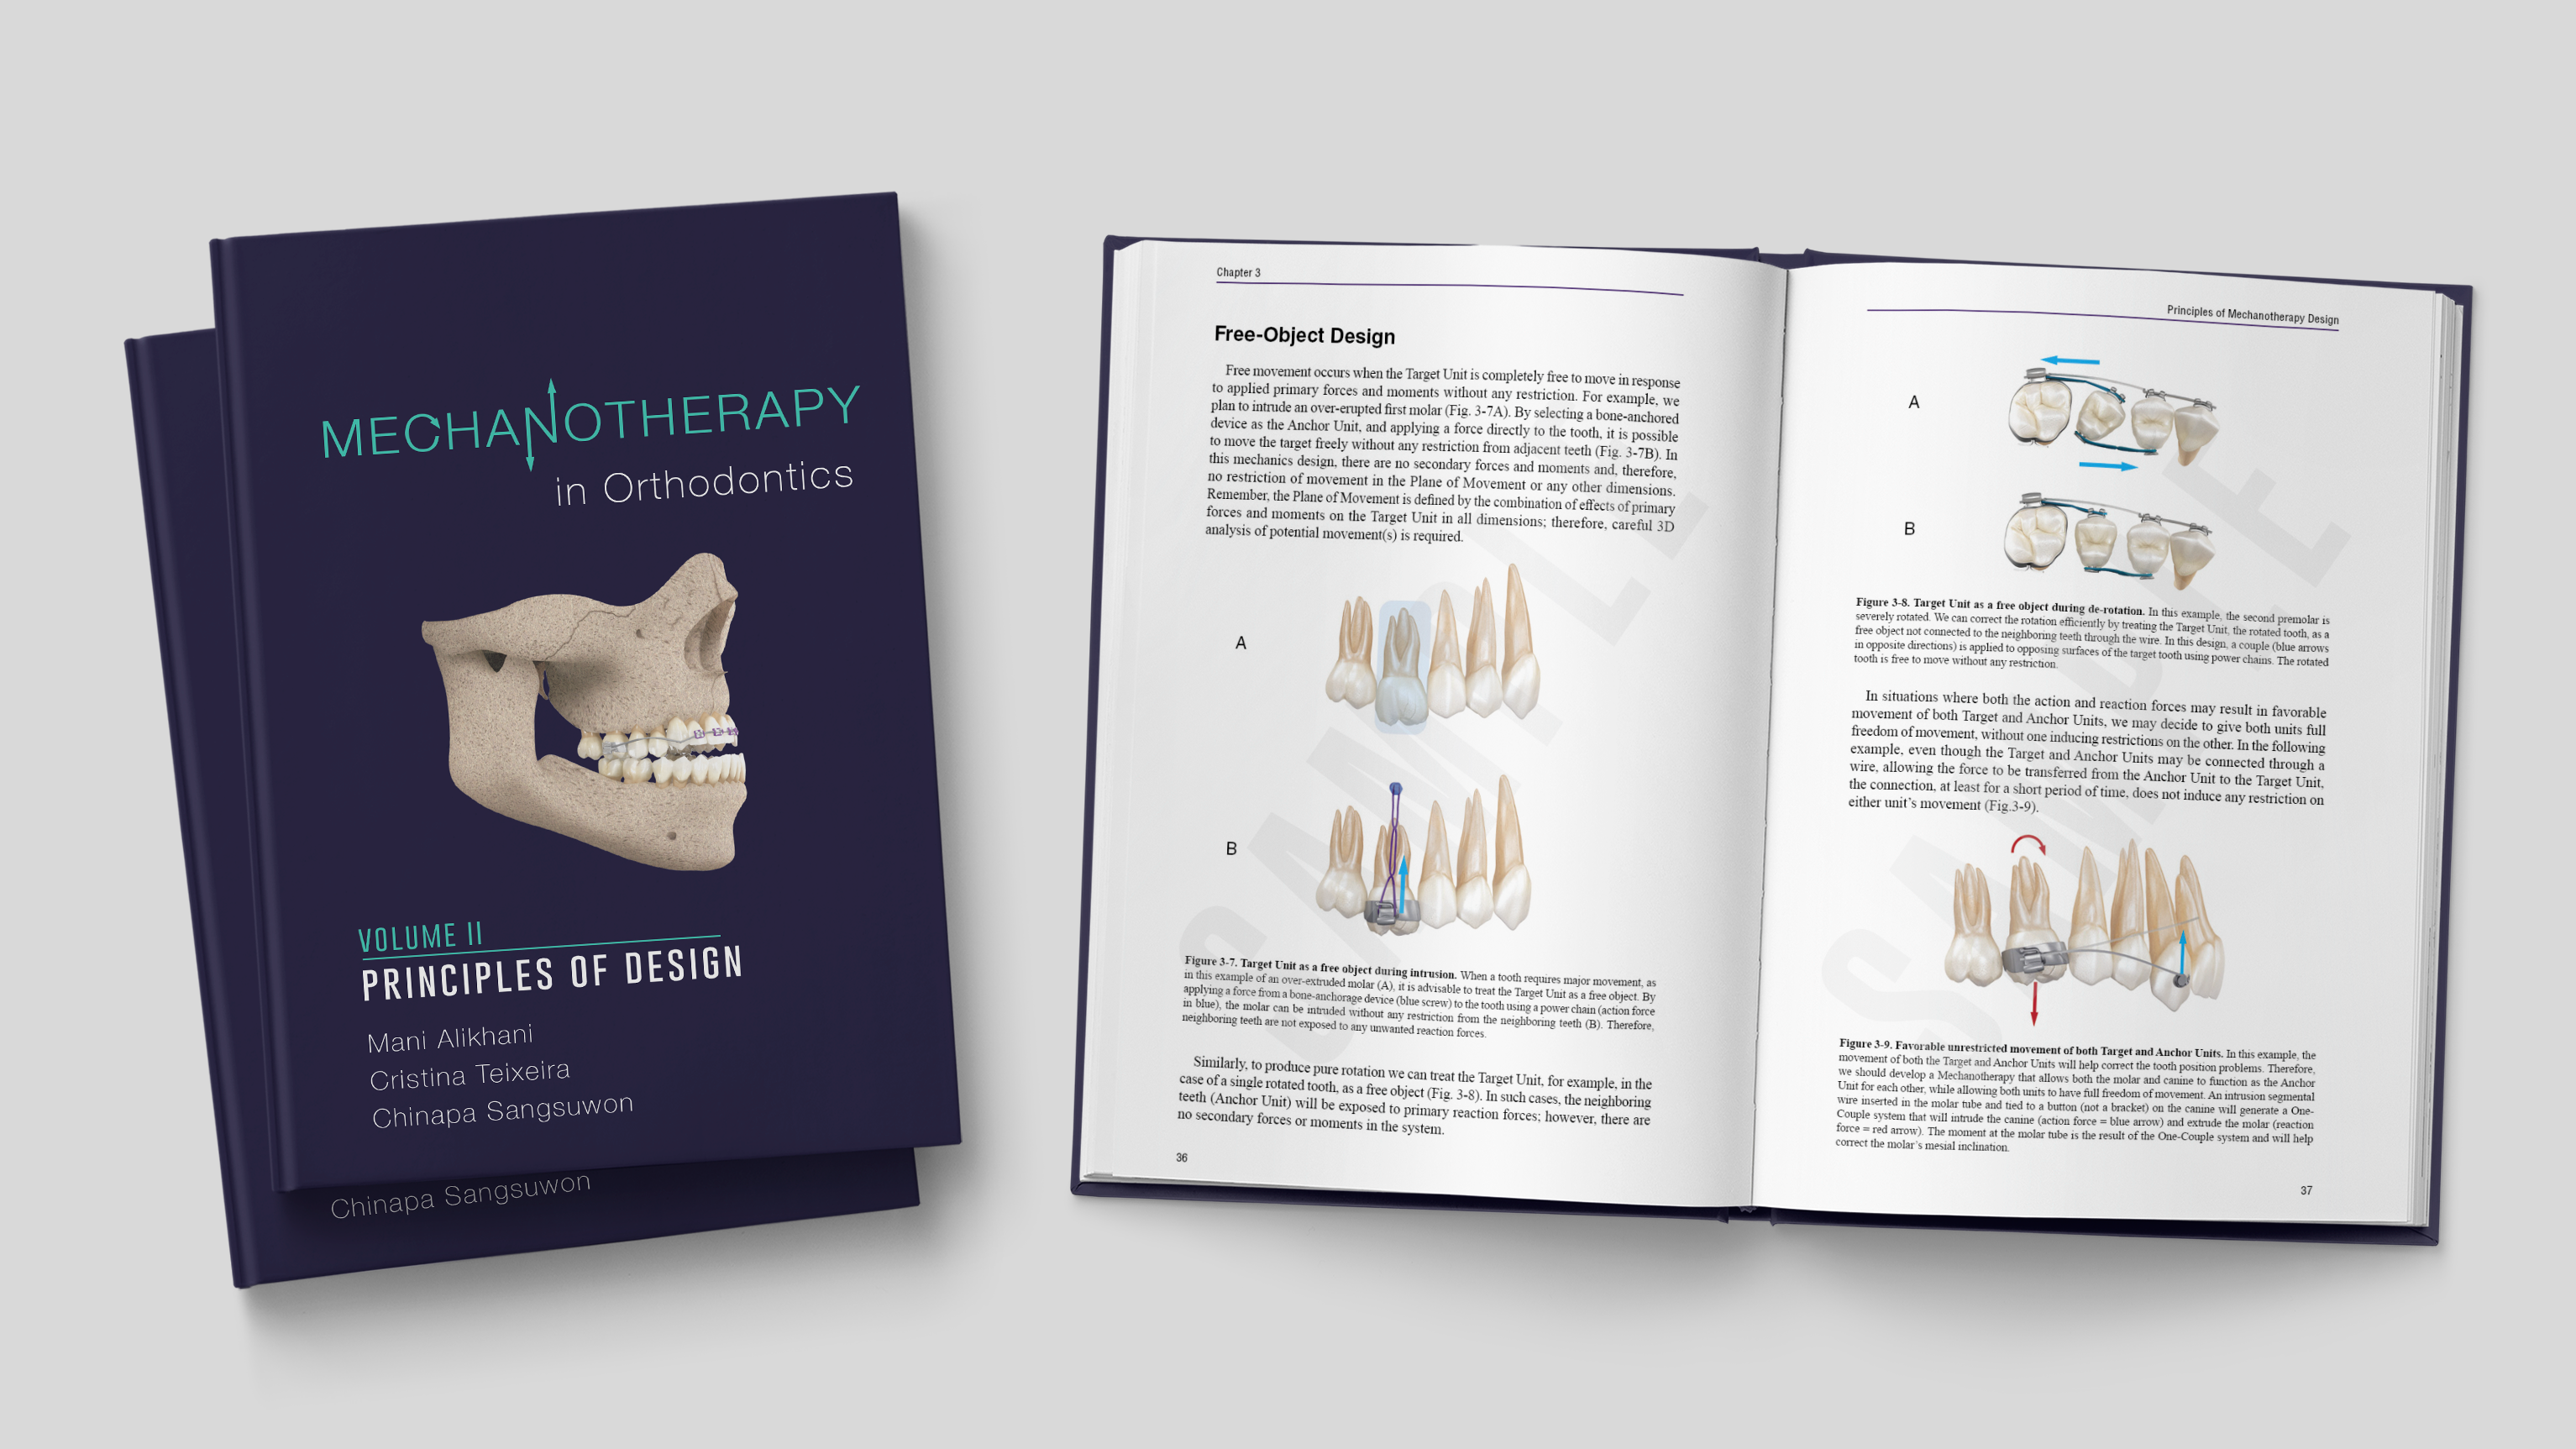 Mechanotherapy in Orthodontics Vol. II: Principles of Design